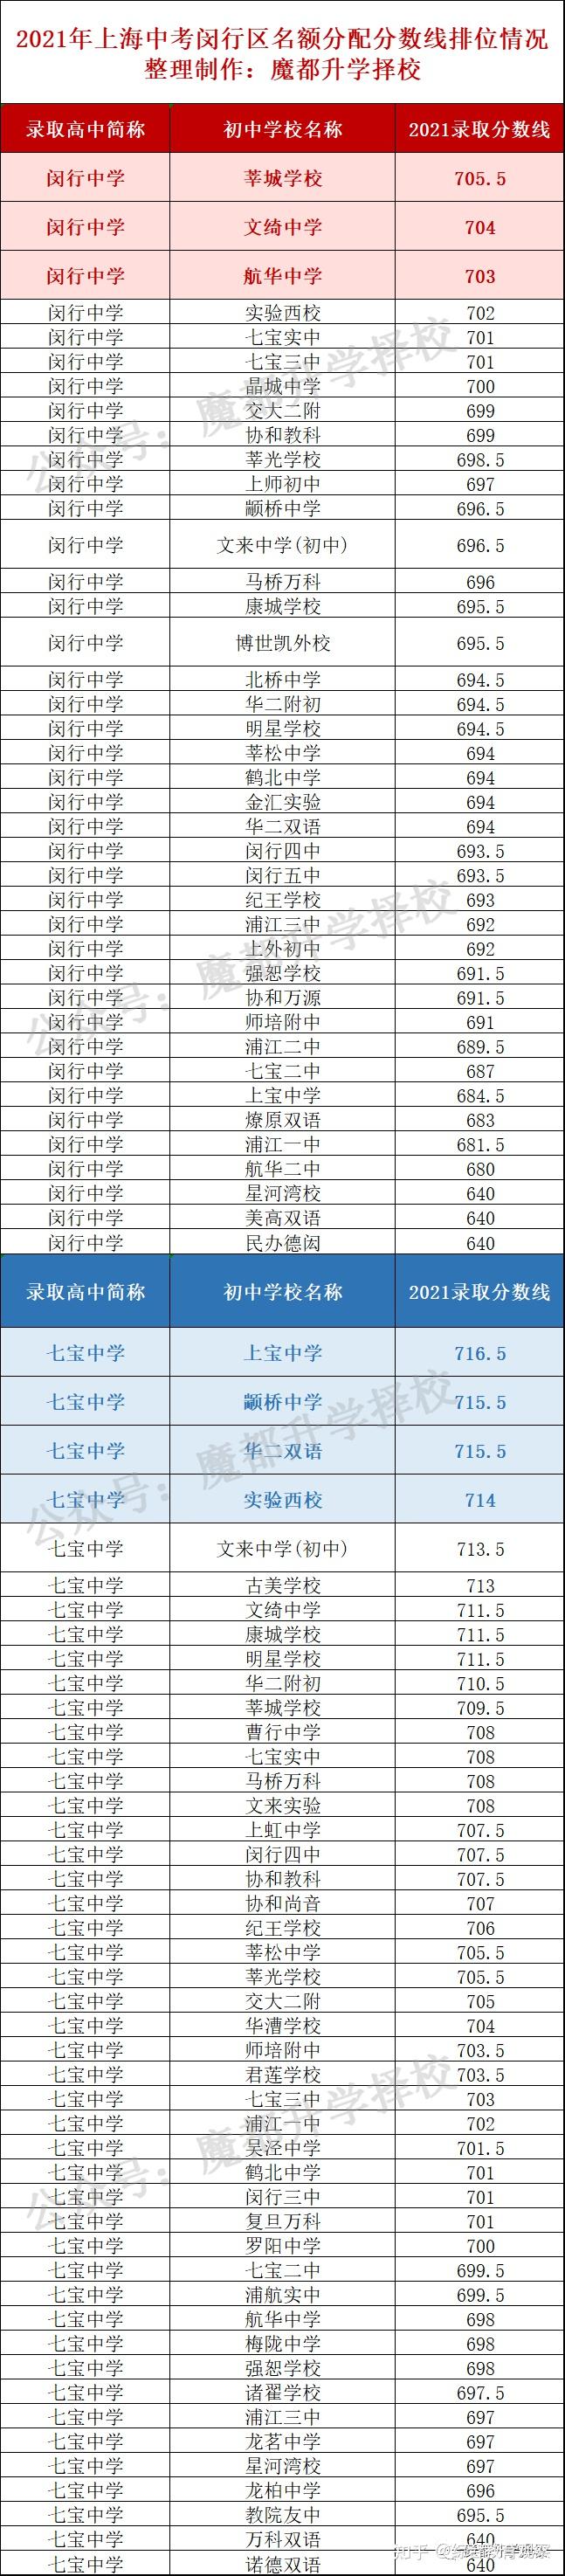 4、松江区高中排名榜：中国高中前10名？